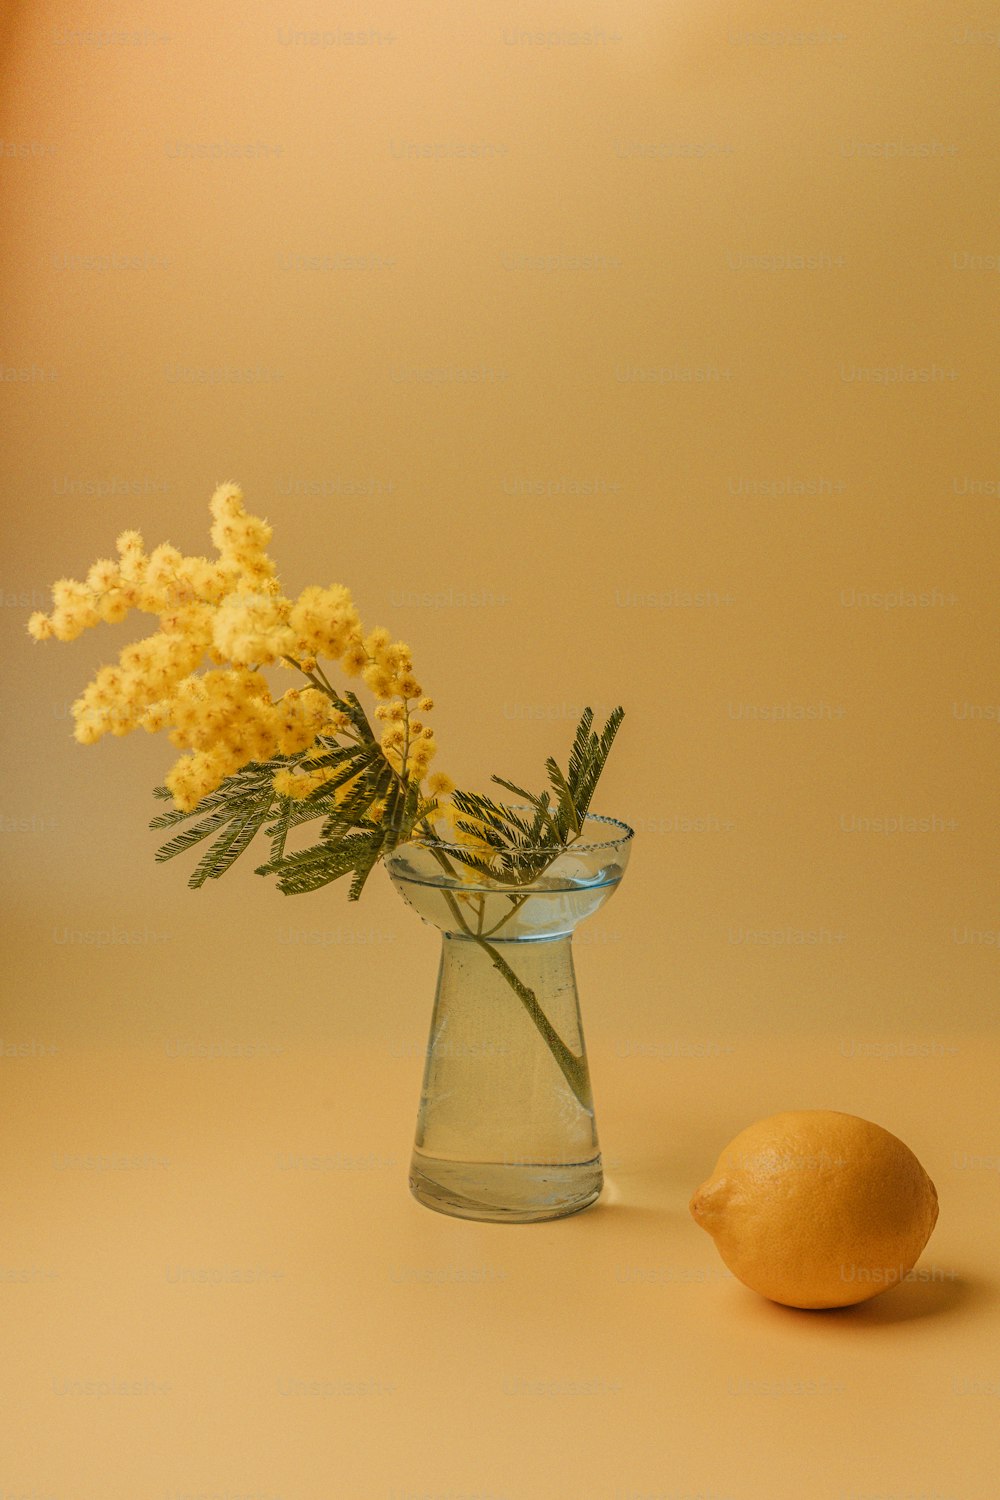 uma flor amarela em um vaso de vidro ao lado de um limão